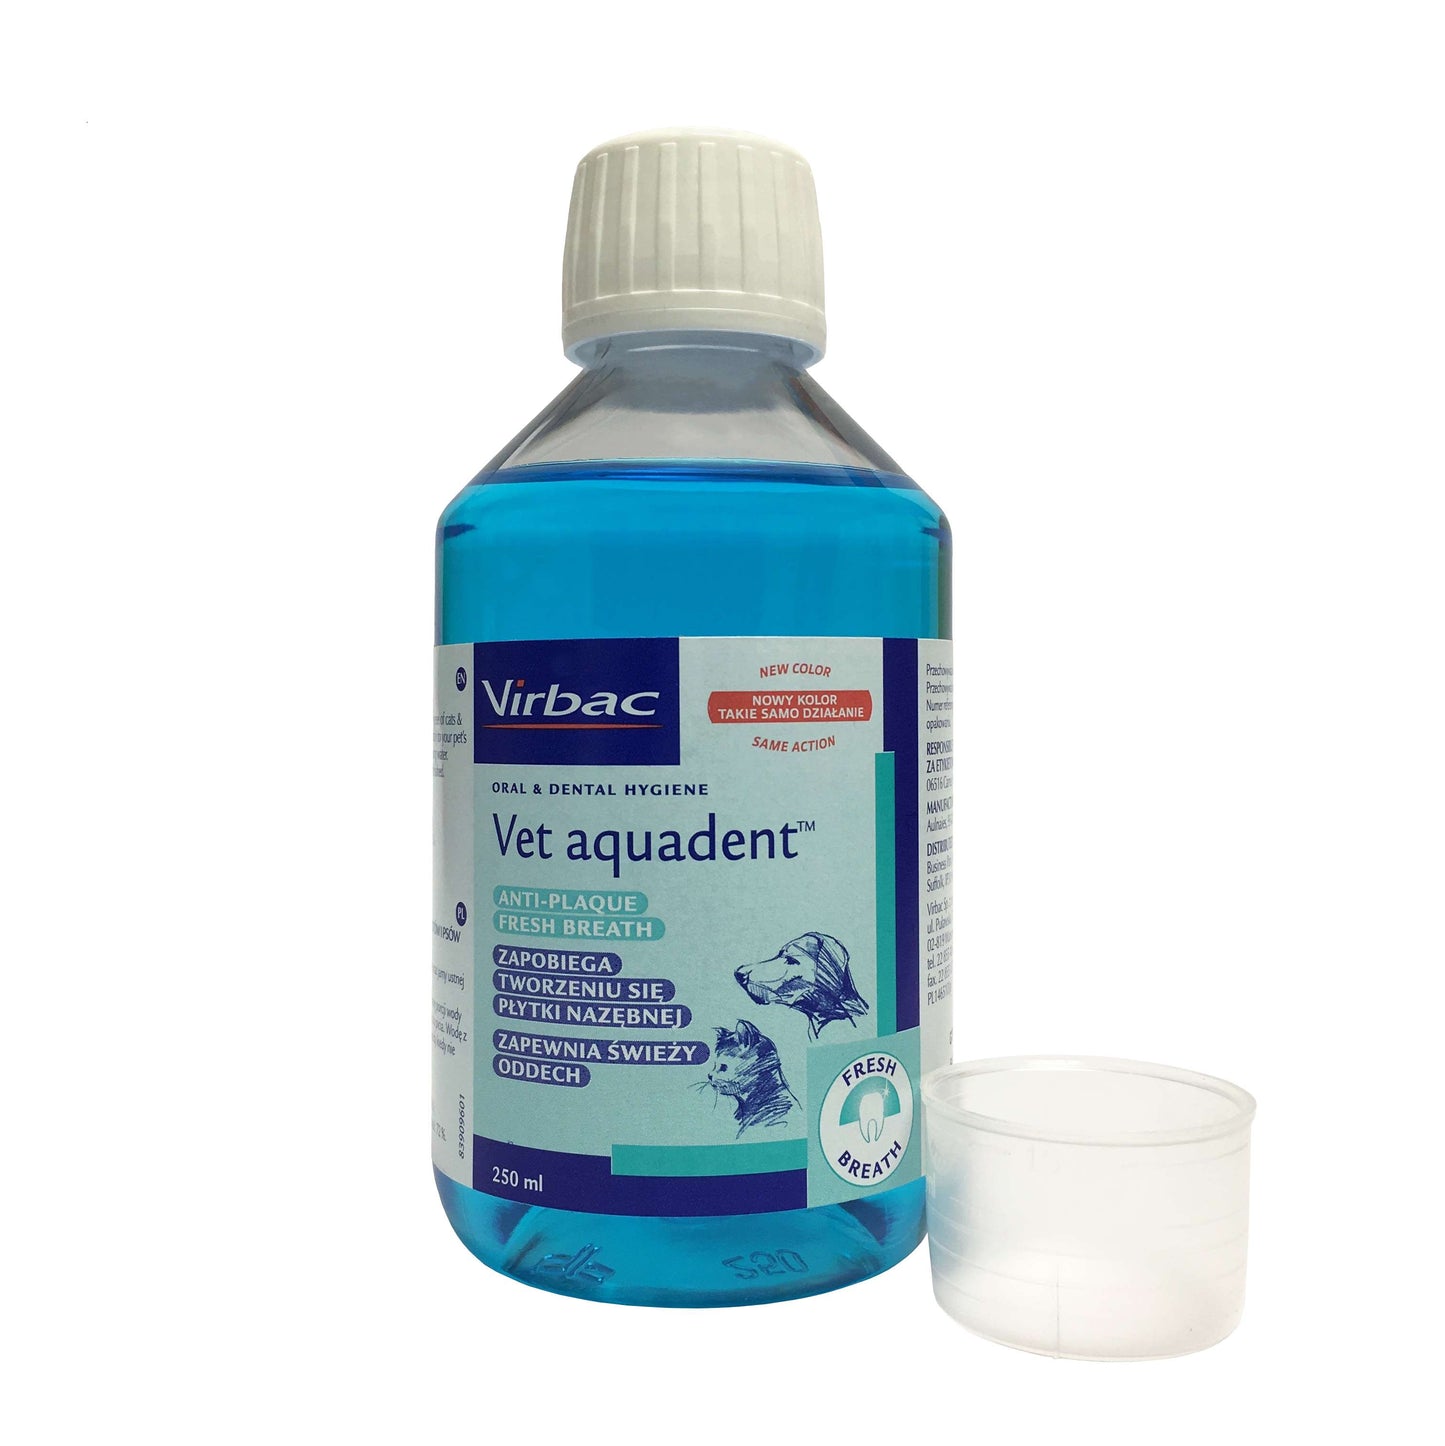 Virbac Vet aquadent™ su FR3SH technologija - geriamojo vandens priedas tinkamai burnos higienai palaikyti